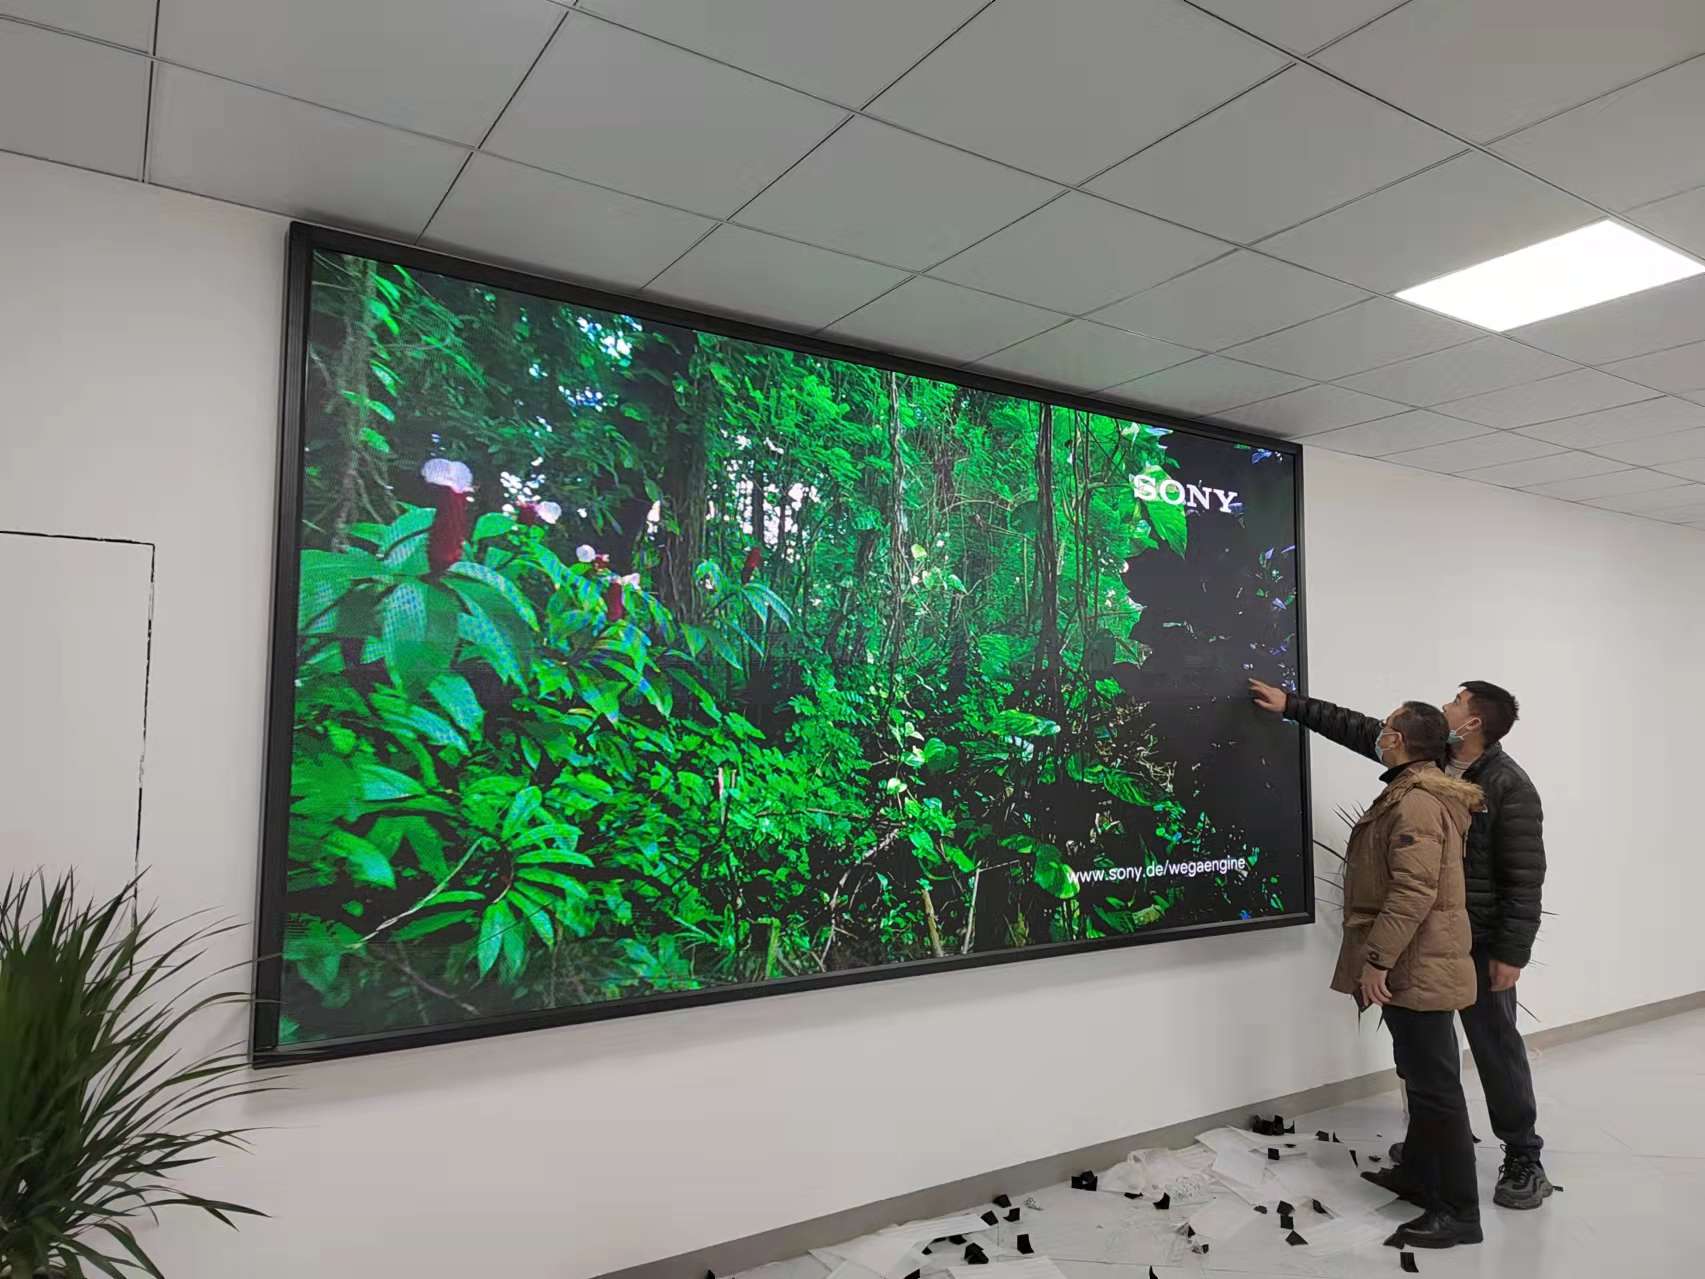 某集团公司项目部展厅p2.5LED显示屏